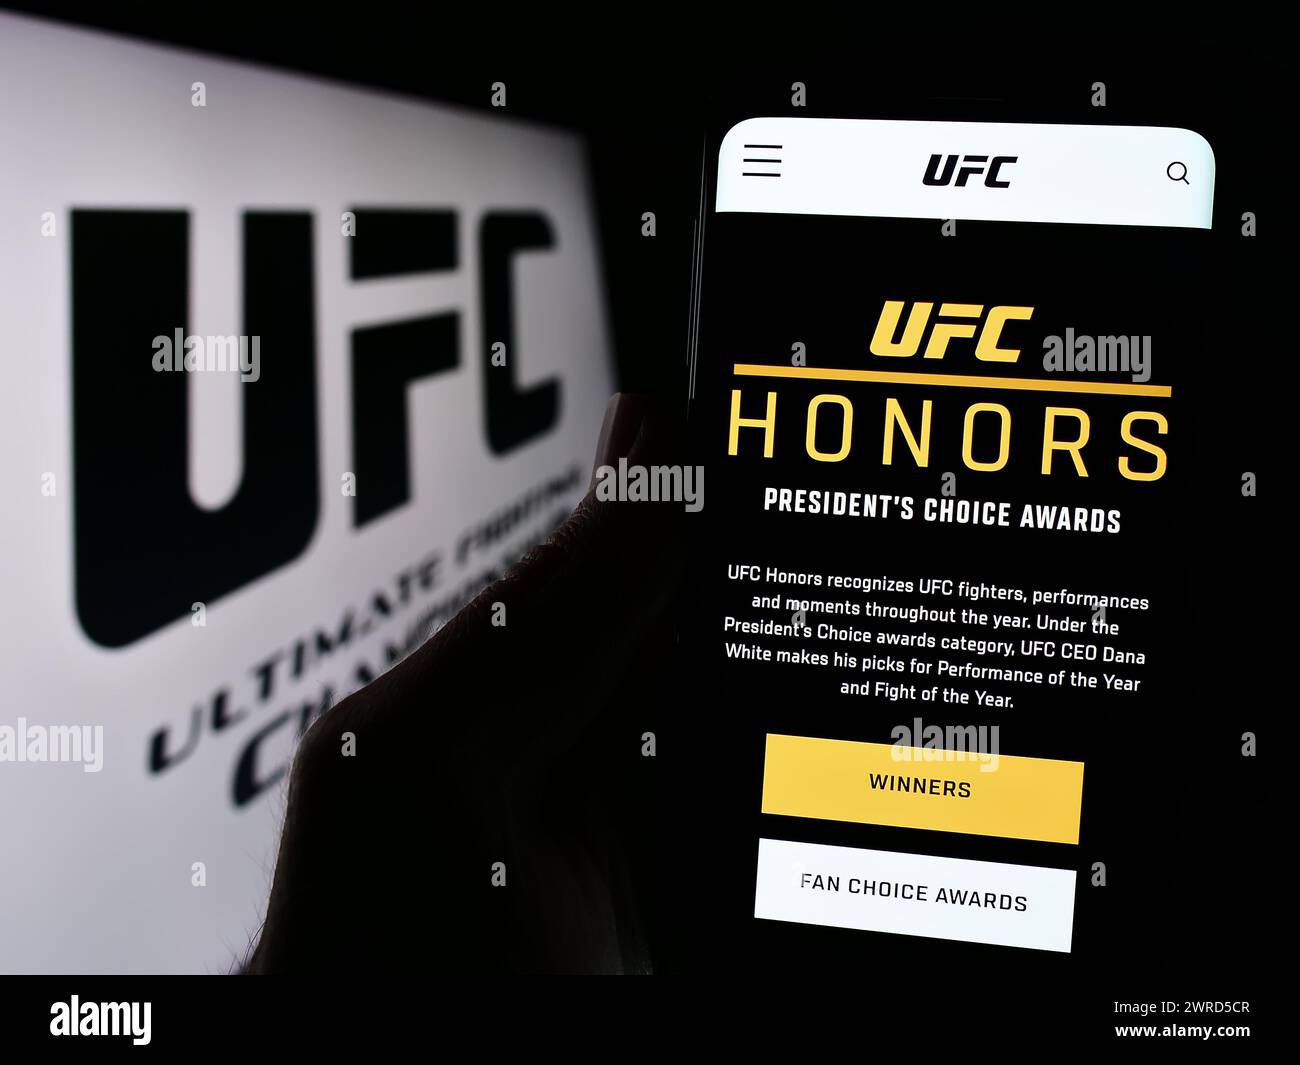 Persona che possiede uno smartphone con pagina web dell'azienda di arti marziali Ultimate Fighting Championship (UFC) con logo. Messa a fuoco al centro del display del telefono. Foto Stock